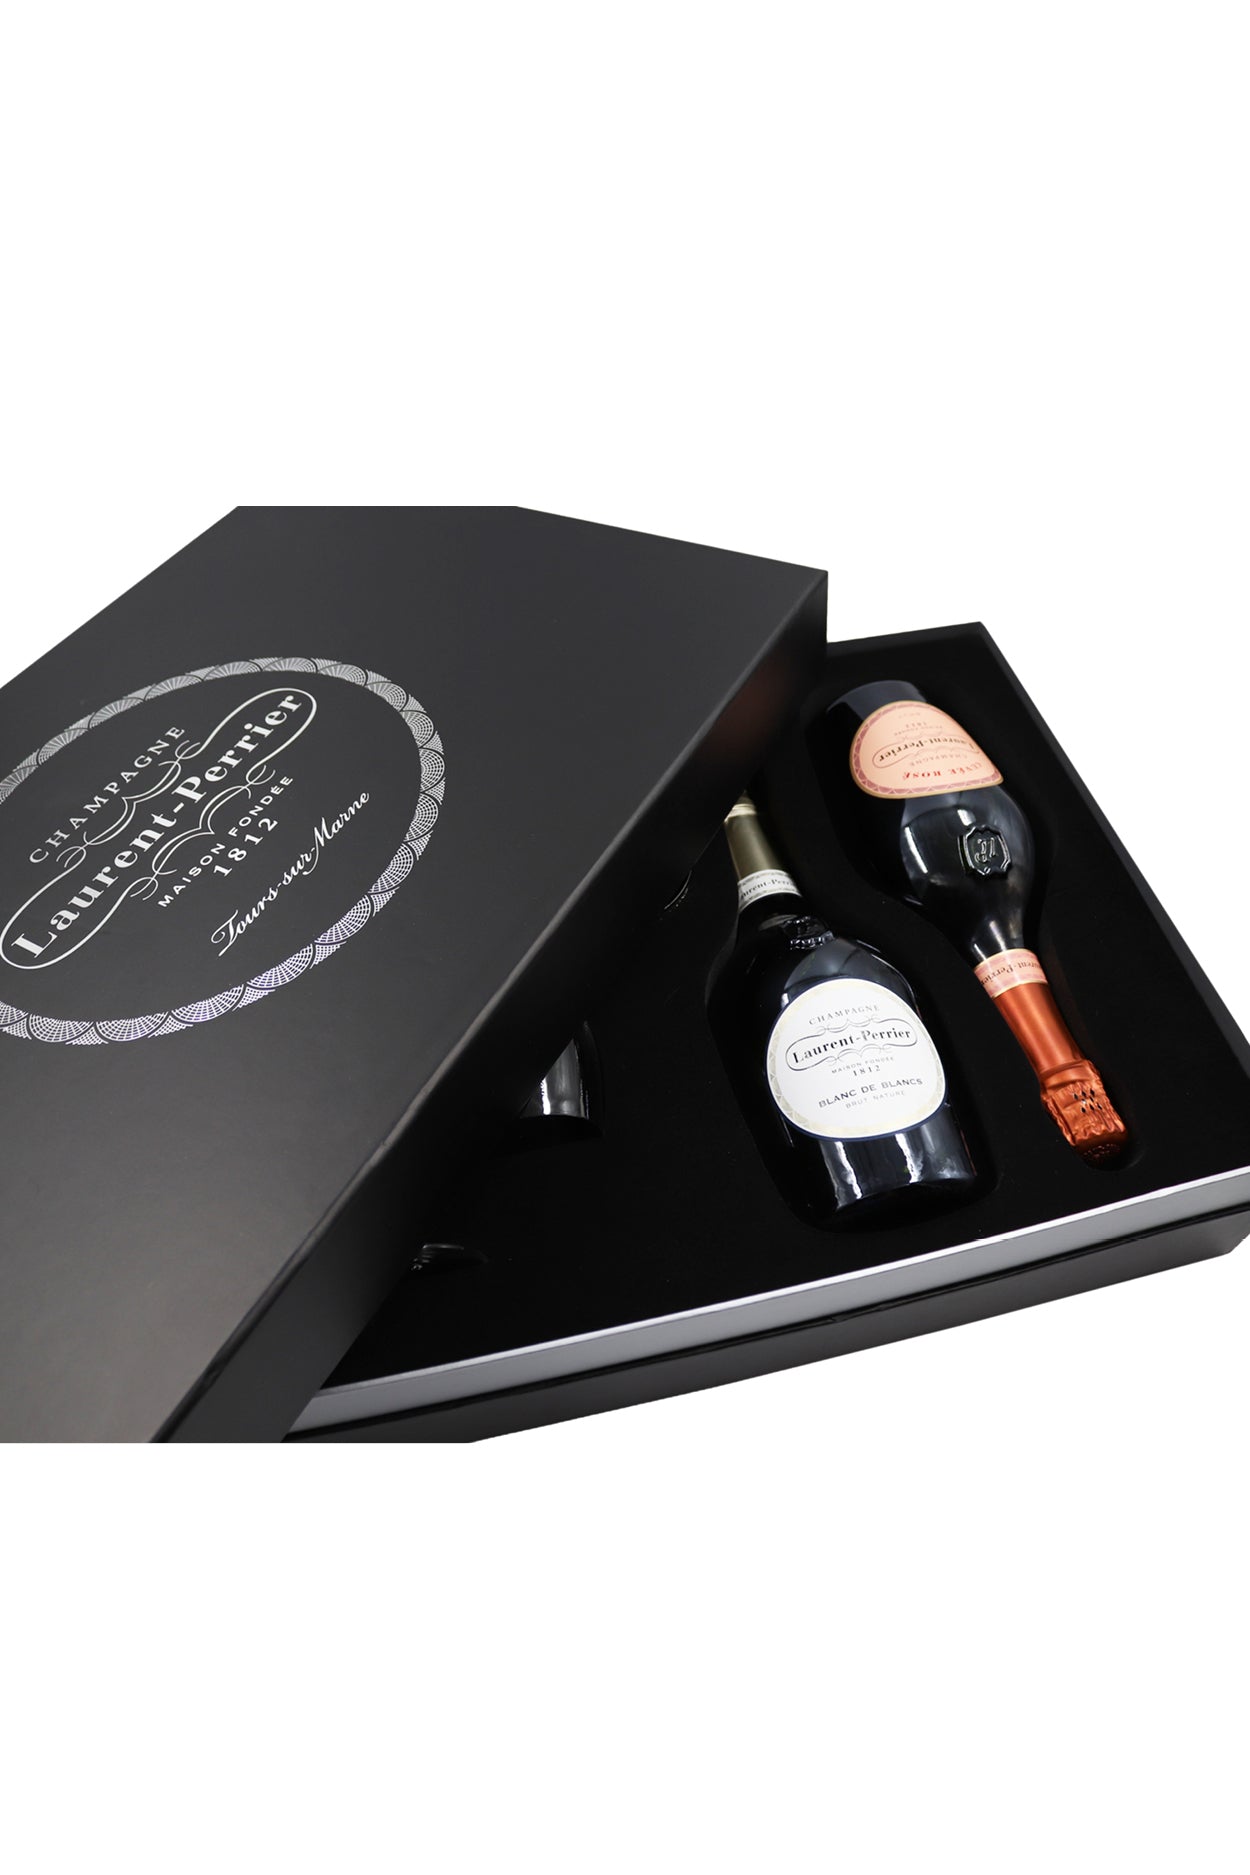 Laurent-Perrier Prestige Box mit 4 Gläsern 12% vol. 0.75l